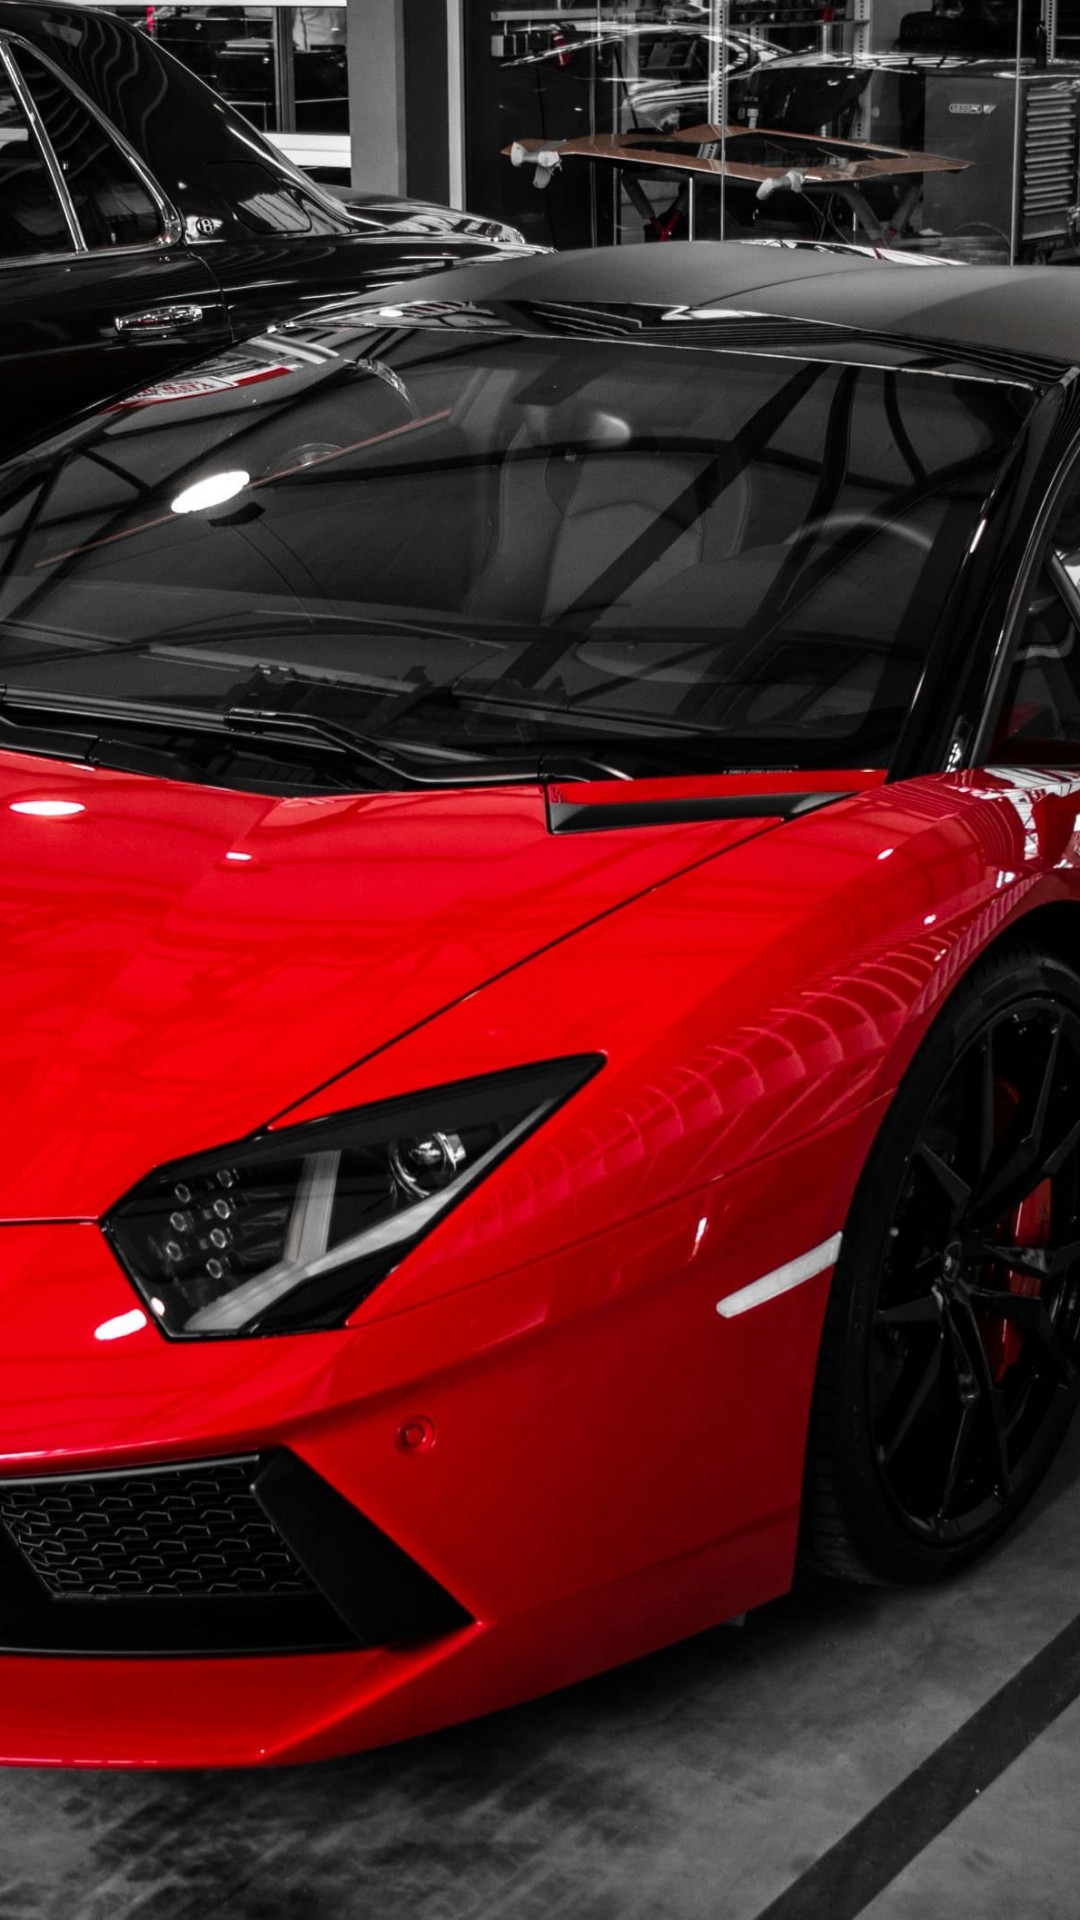 Red Lamborghini Aventador Wallpaper for SAMSUNG Galaxy S5